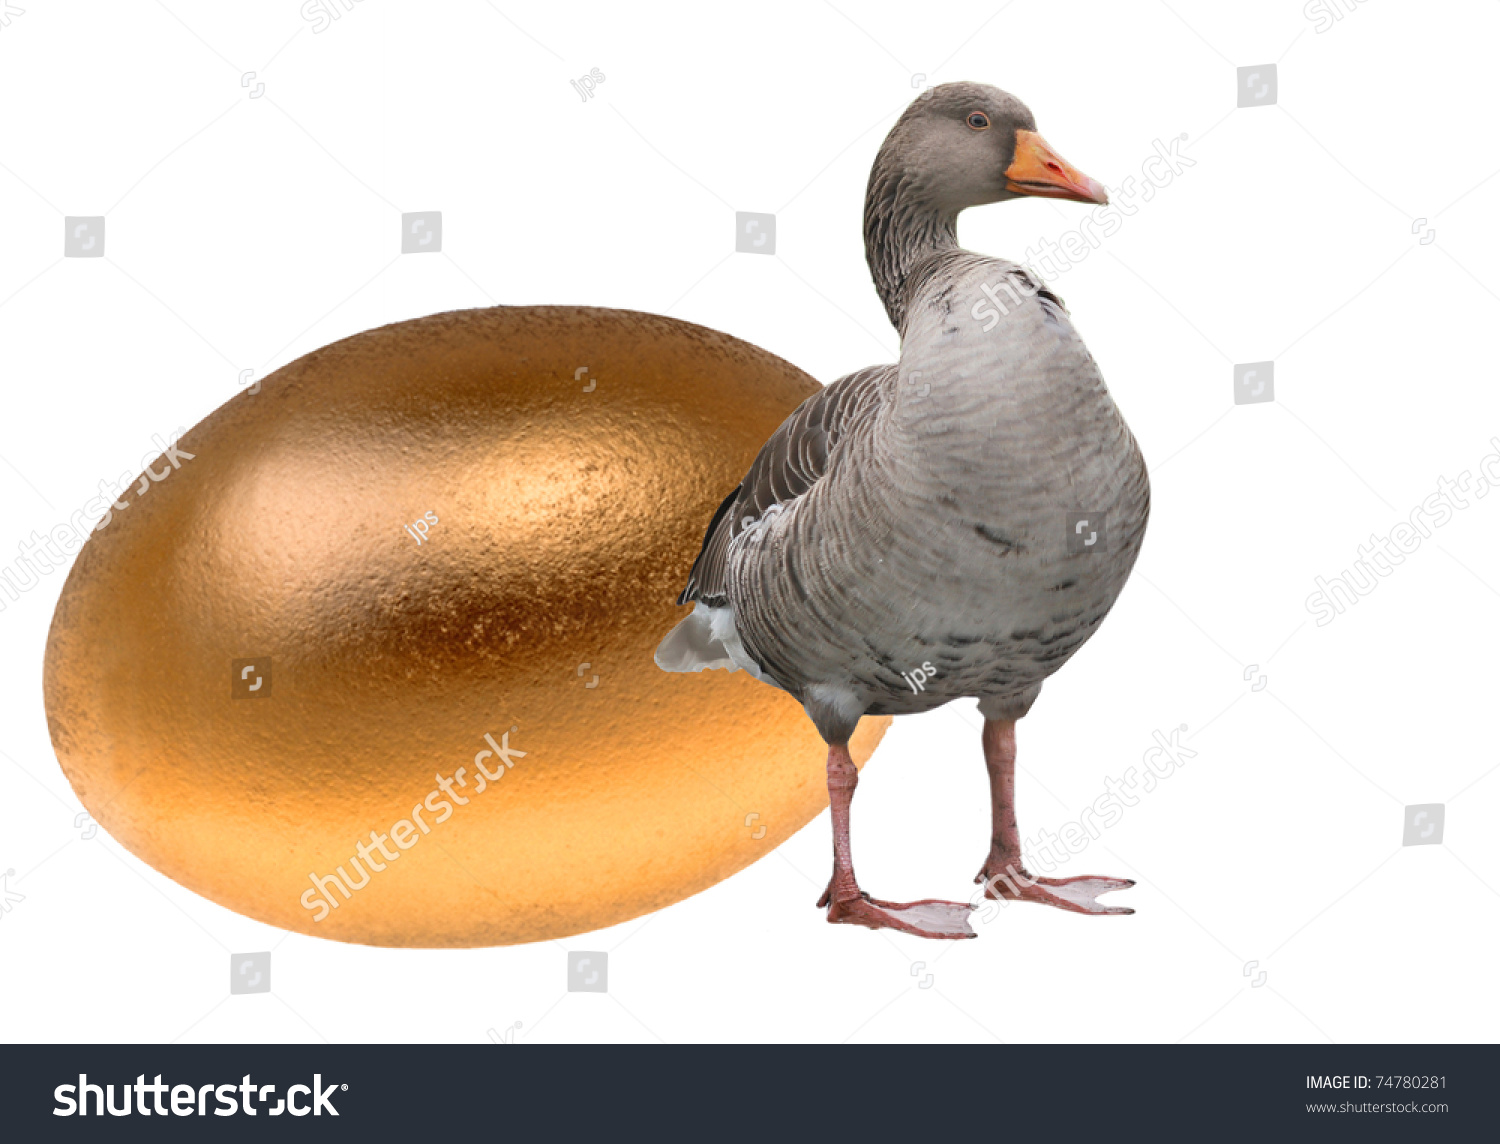 Goose Golden Egg Stock Photo 74780281 - Shutterstock